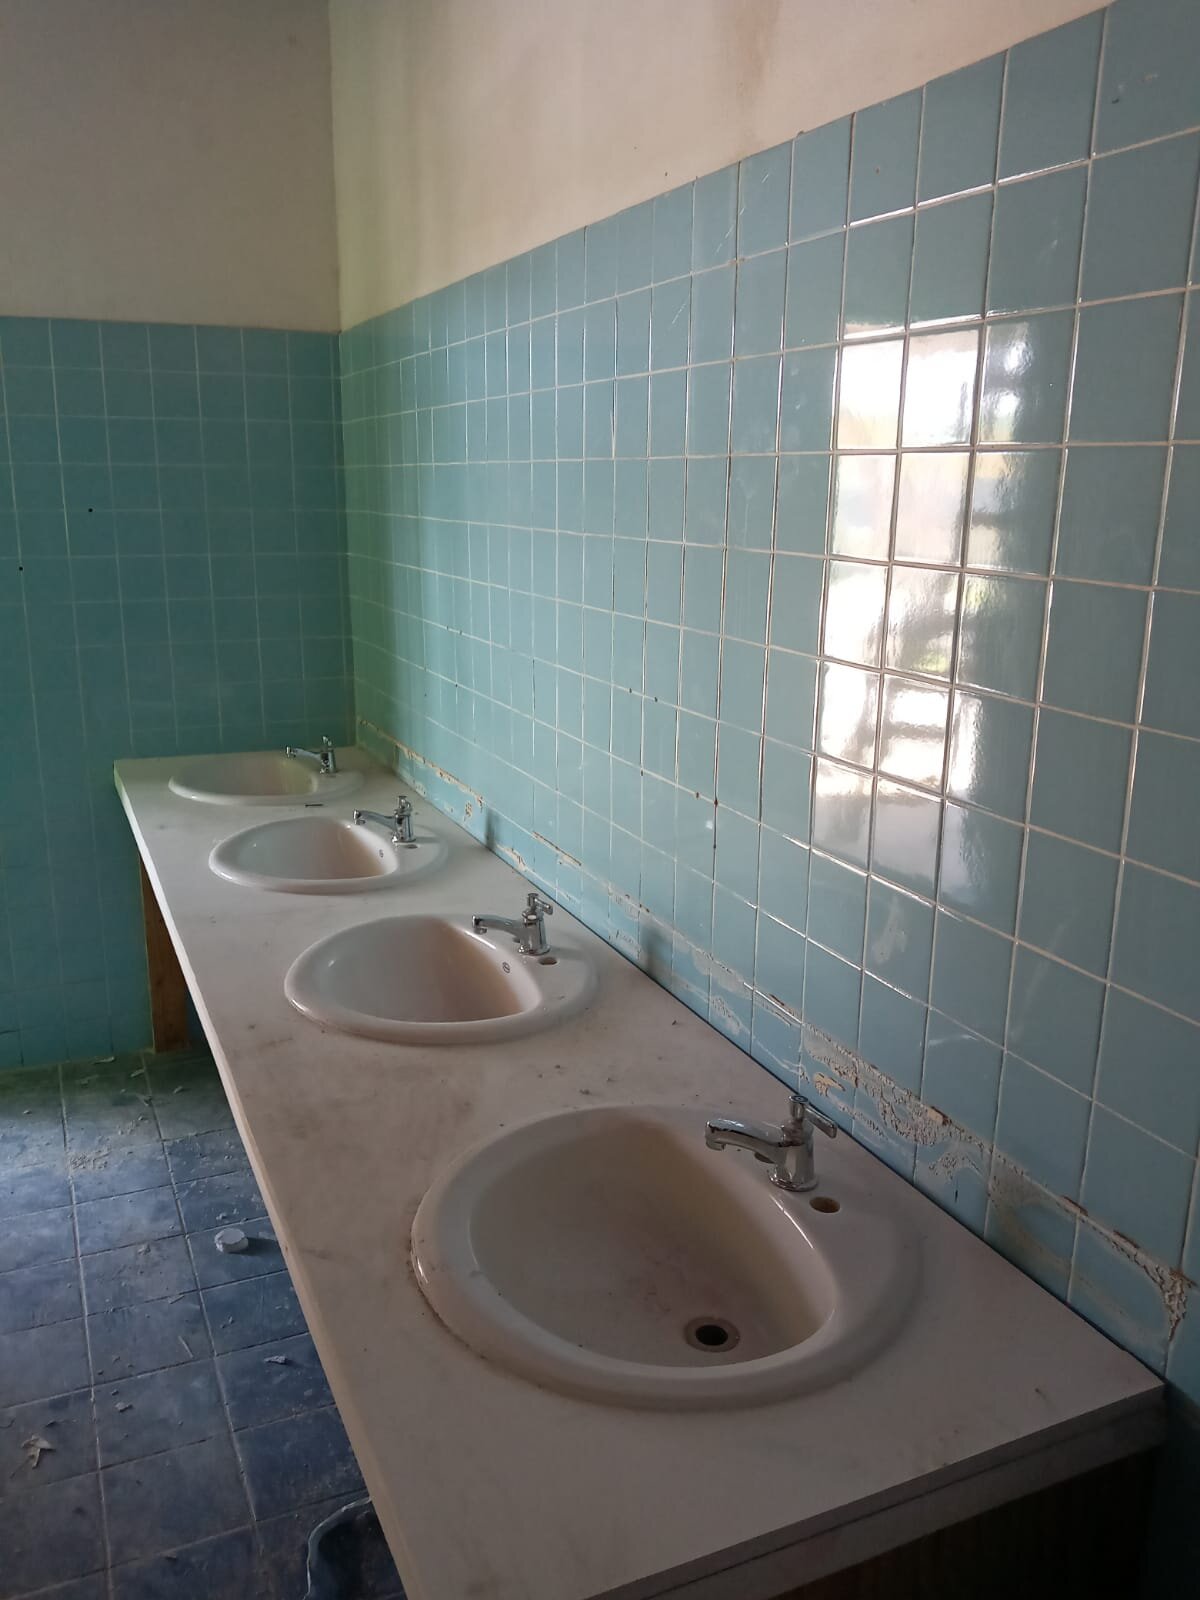 bathroom countertops and sinks.jpg